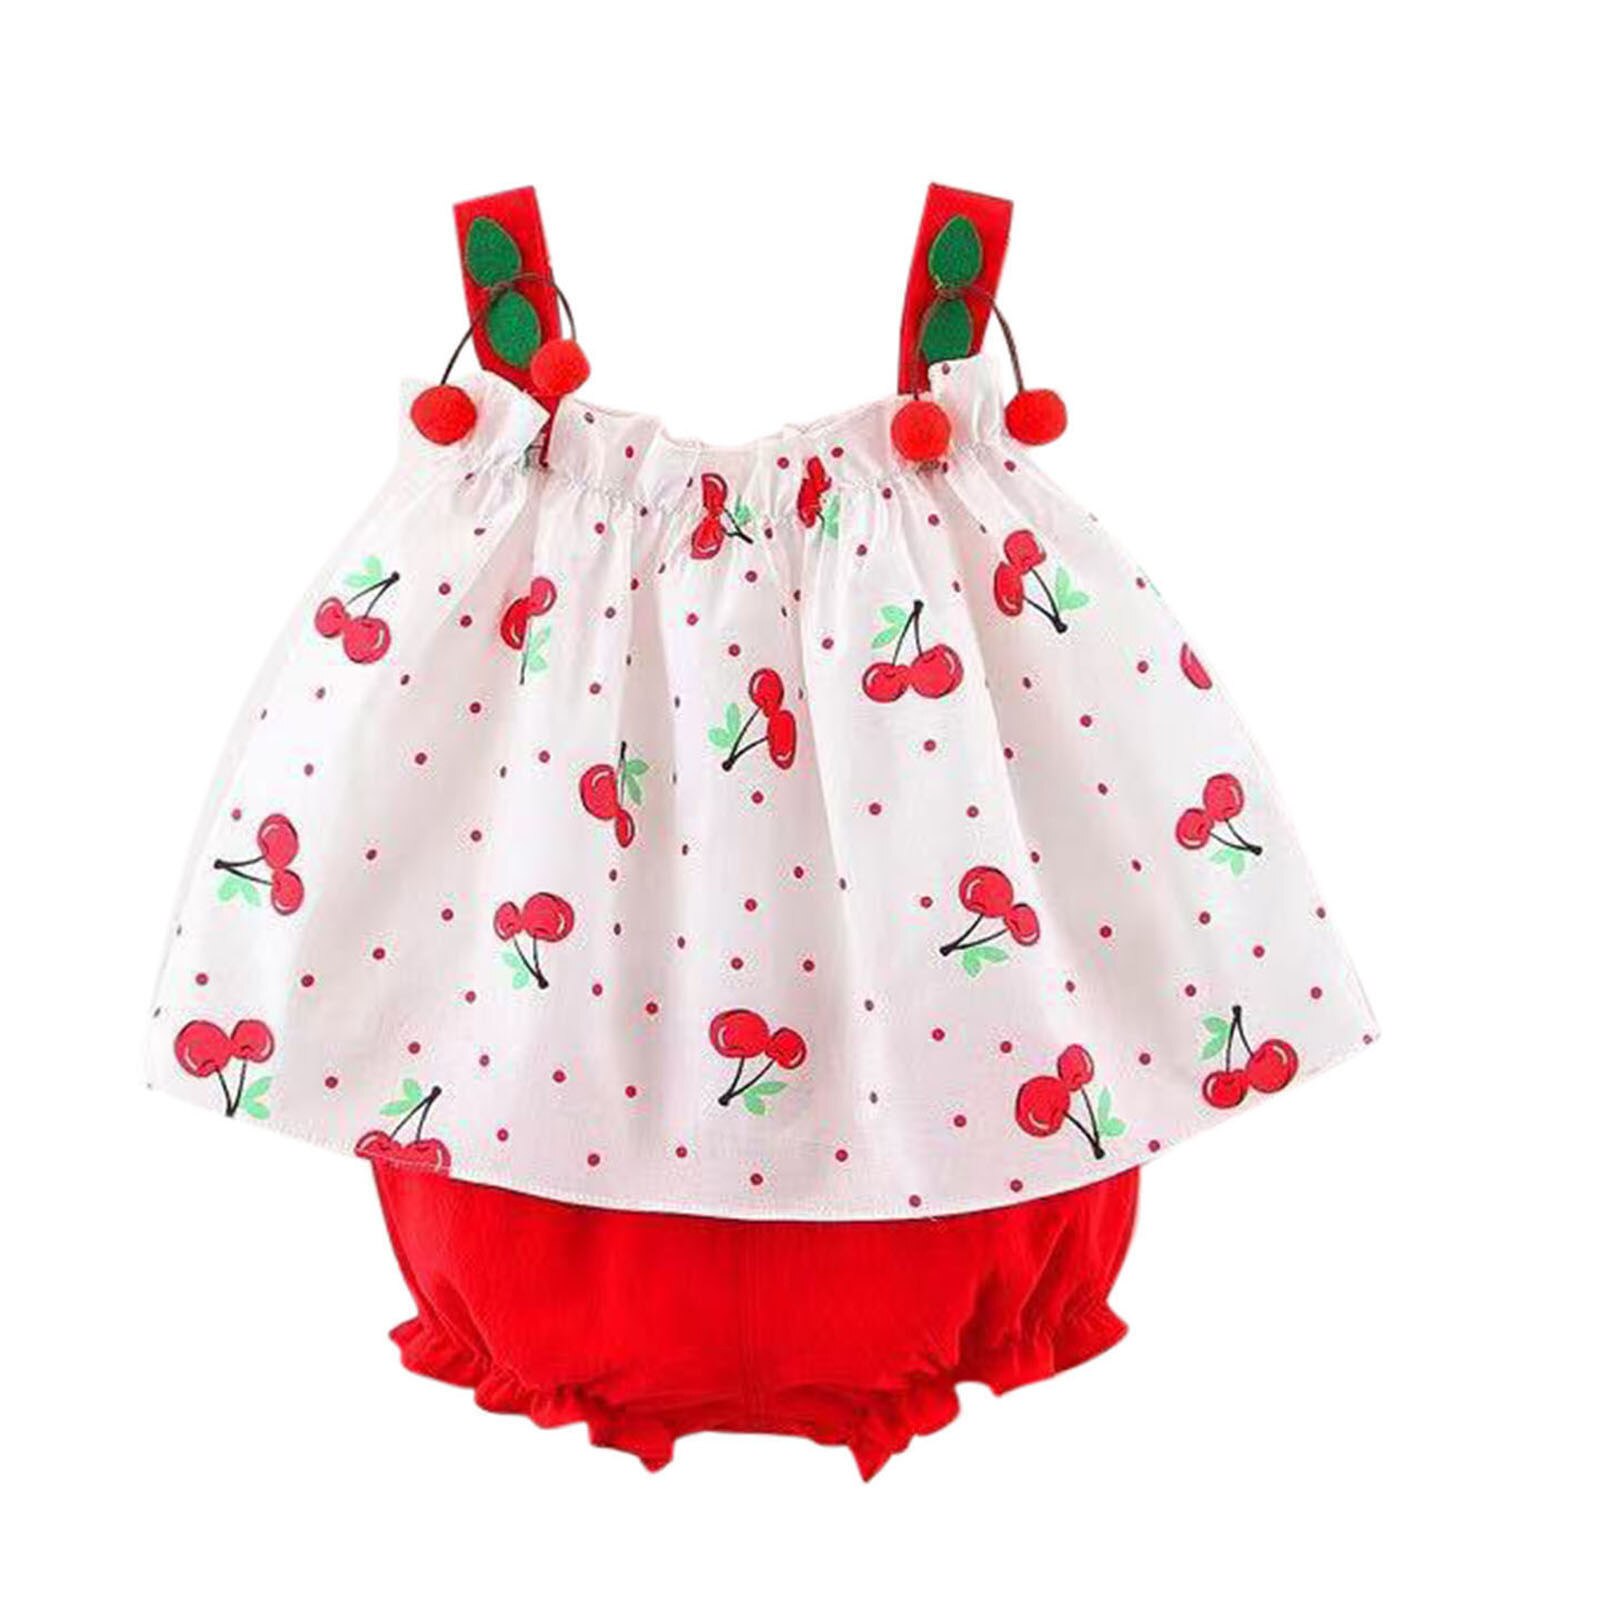 Meisjes Kleding Mouwloze Jurk Baby Baby Meisjes Bretels Polka Dot Print Jurk Tops Shorts Outfits Kinderkleding Sets